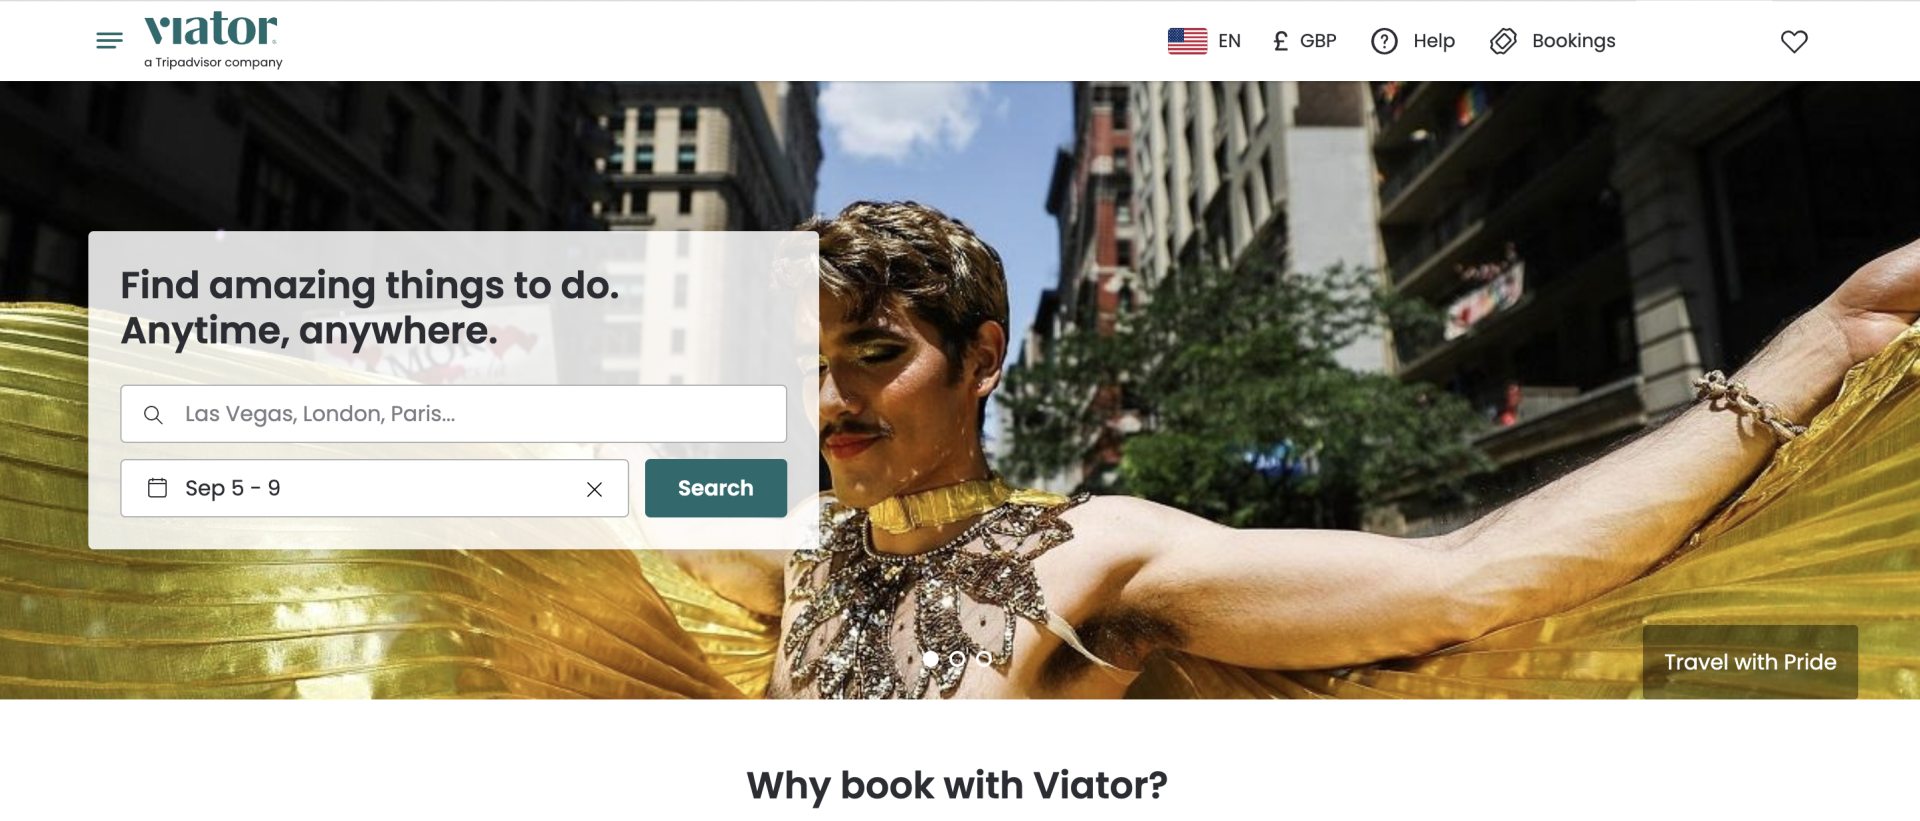 Viator website homepage